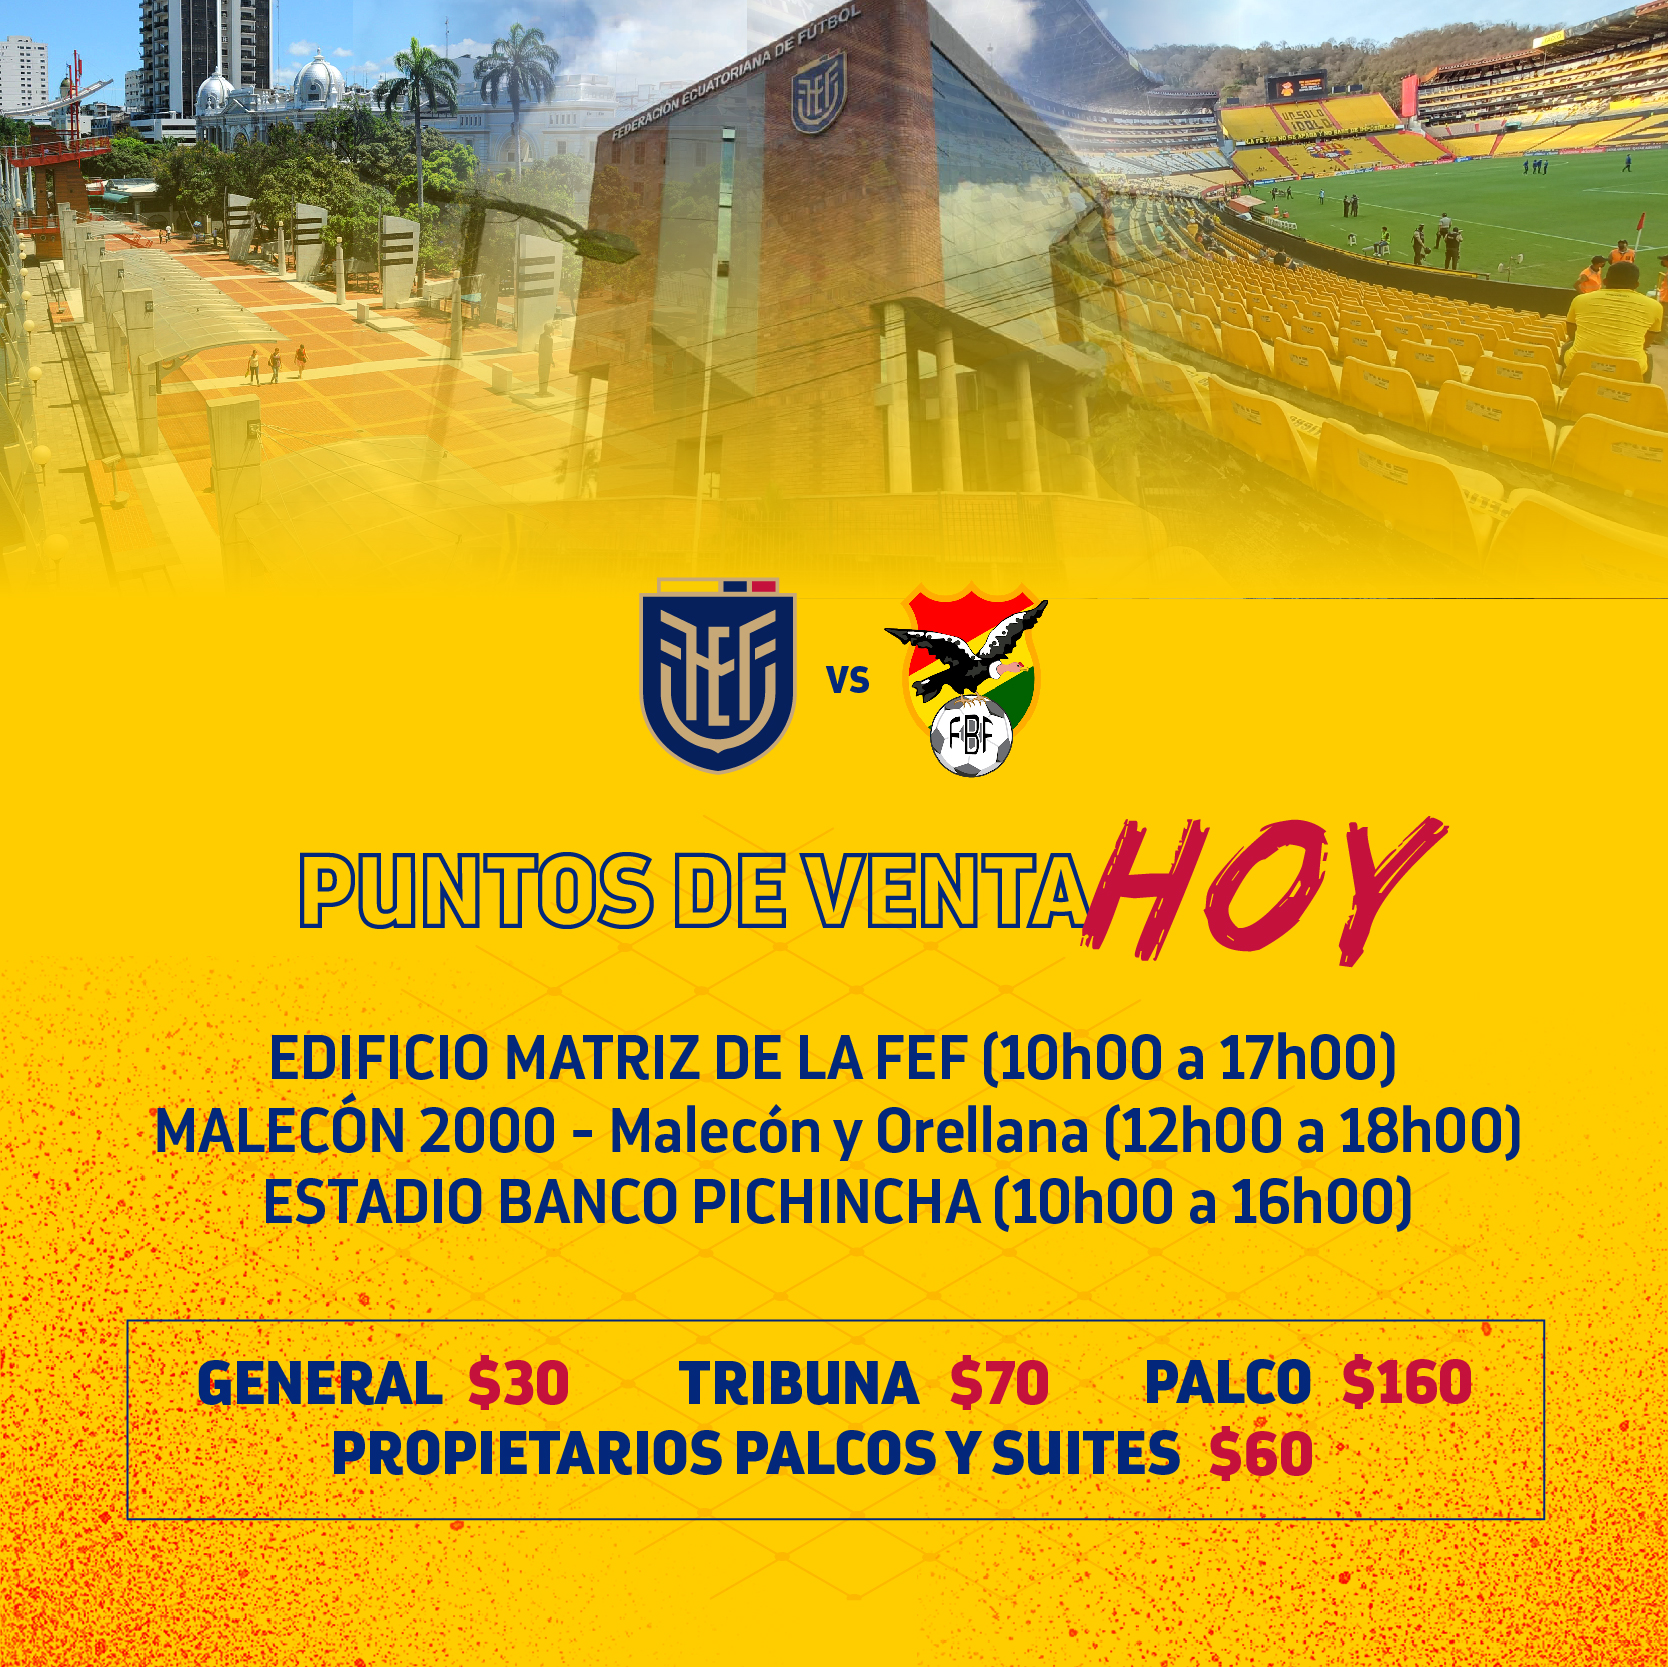 Foto: Federación Ecuatoriana de Fútbol